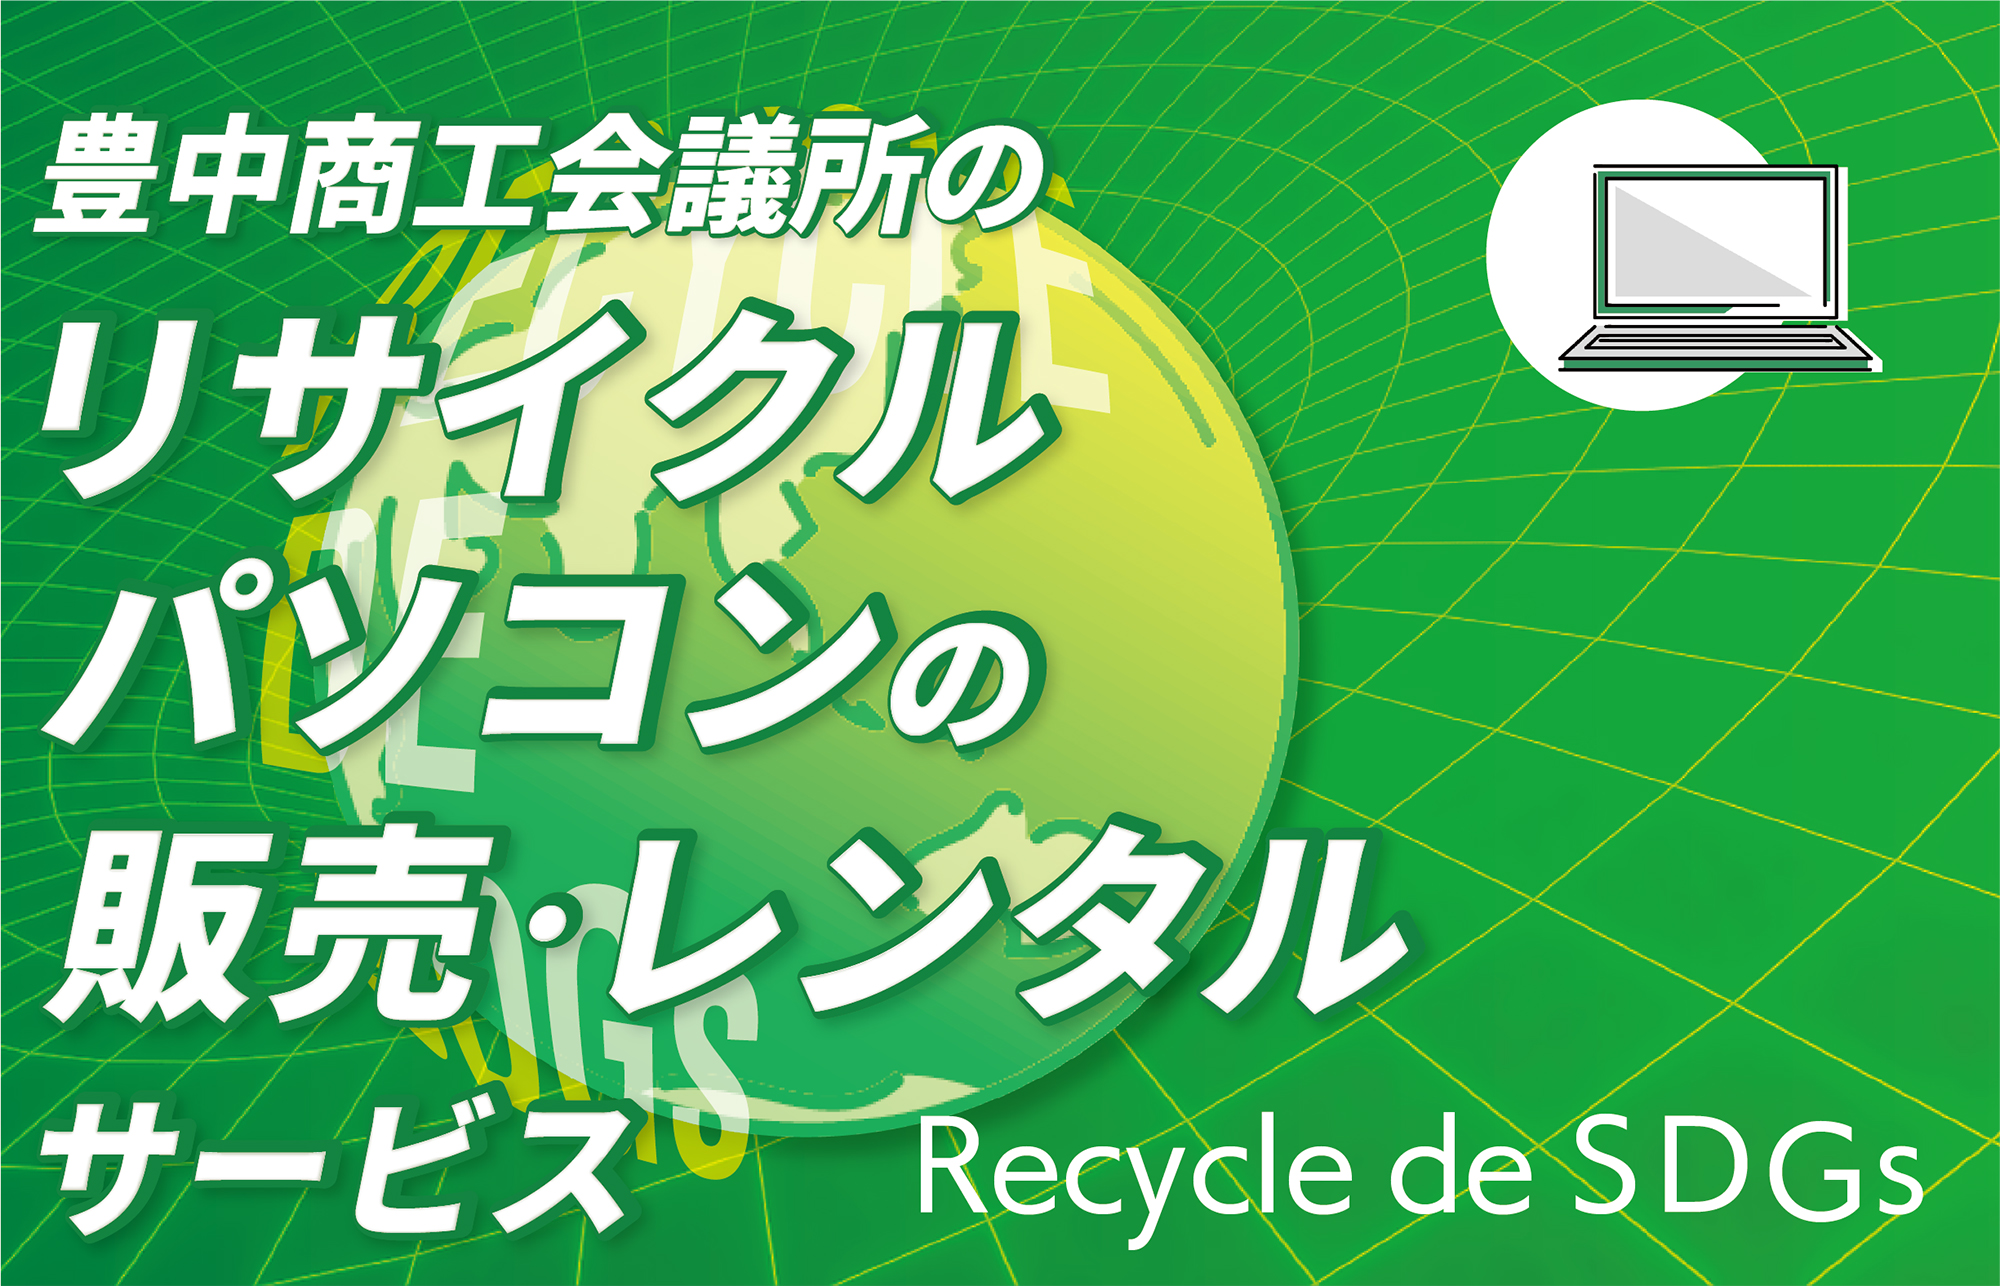 Recycle de SDGs